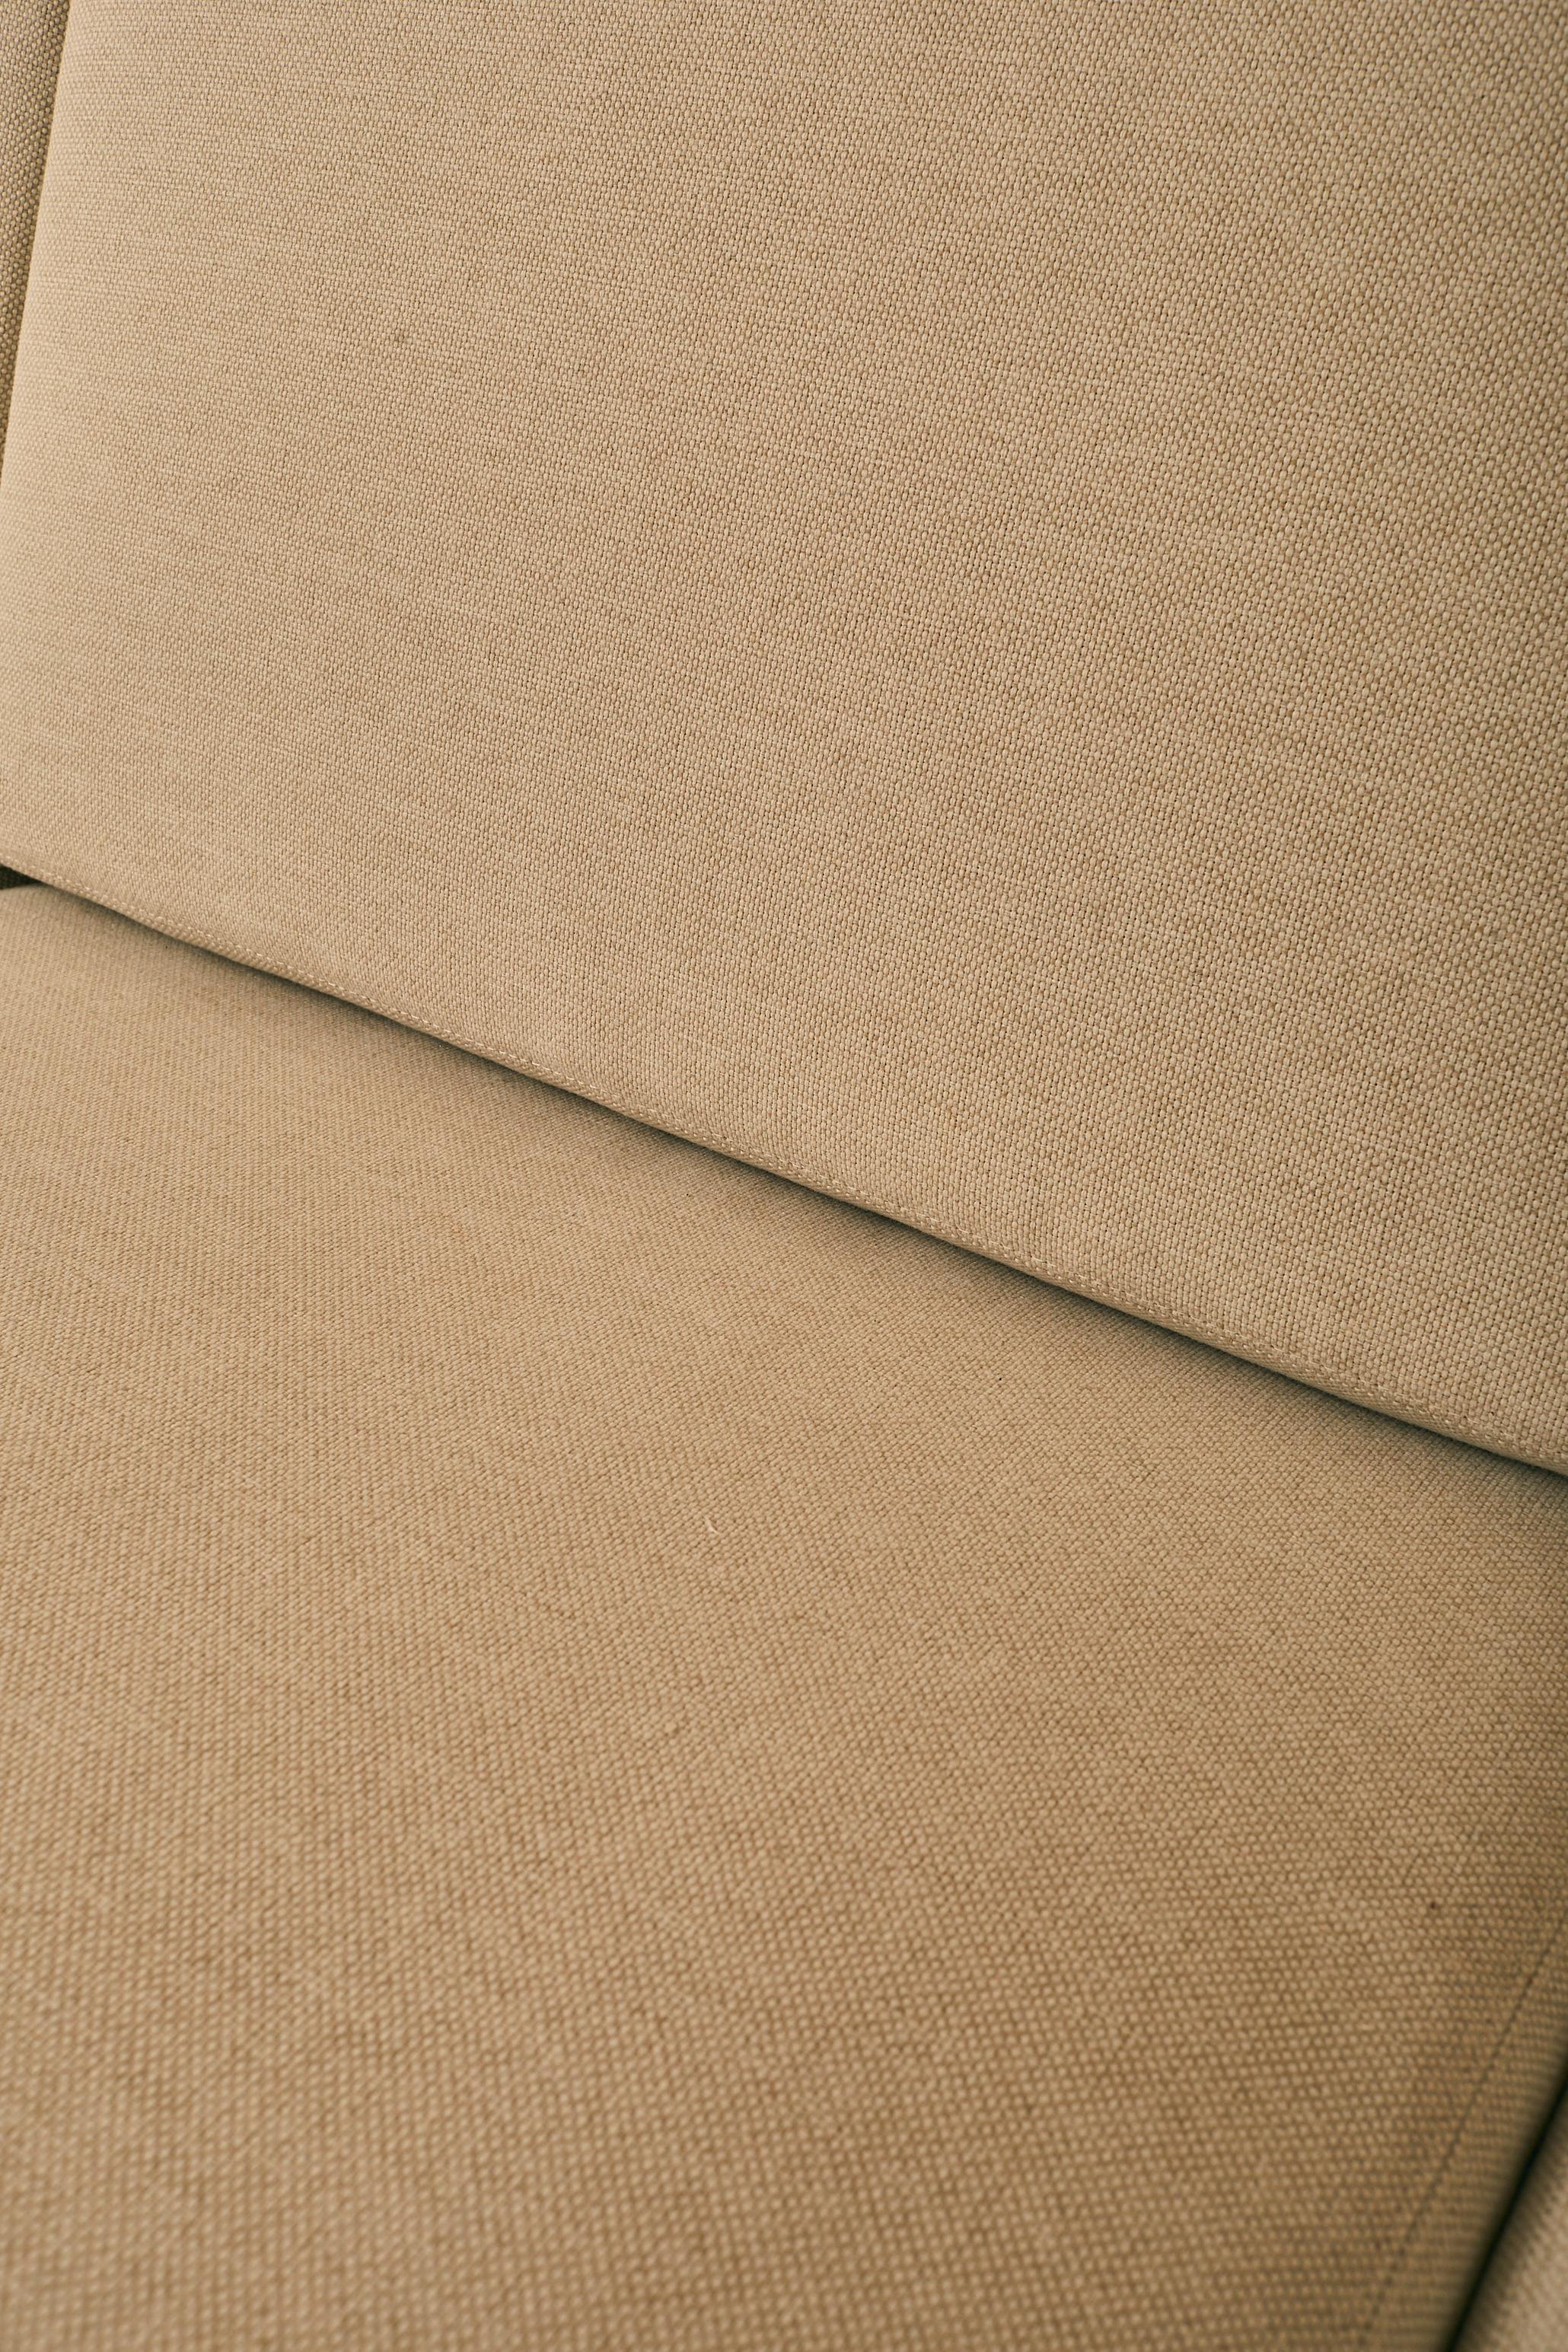 Italian Rectangular Modernist Sofa For Sale